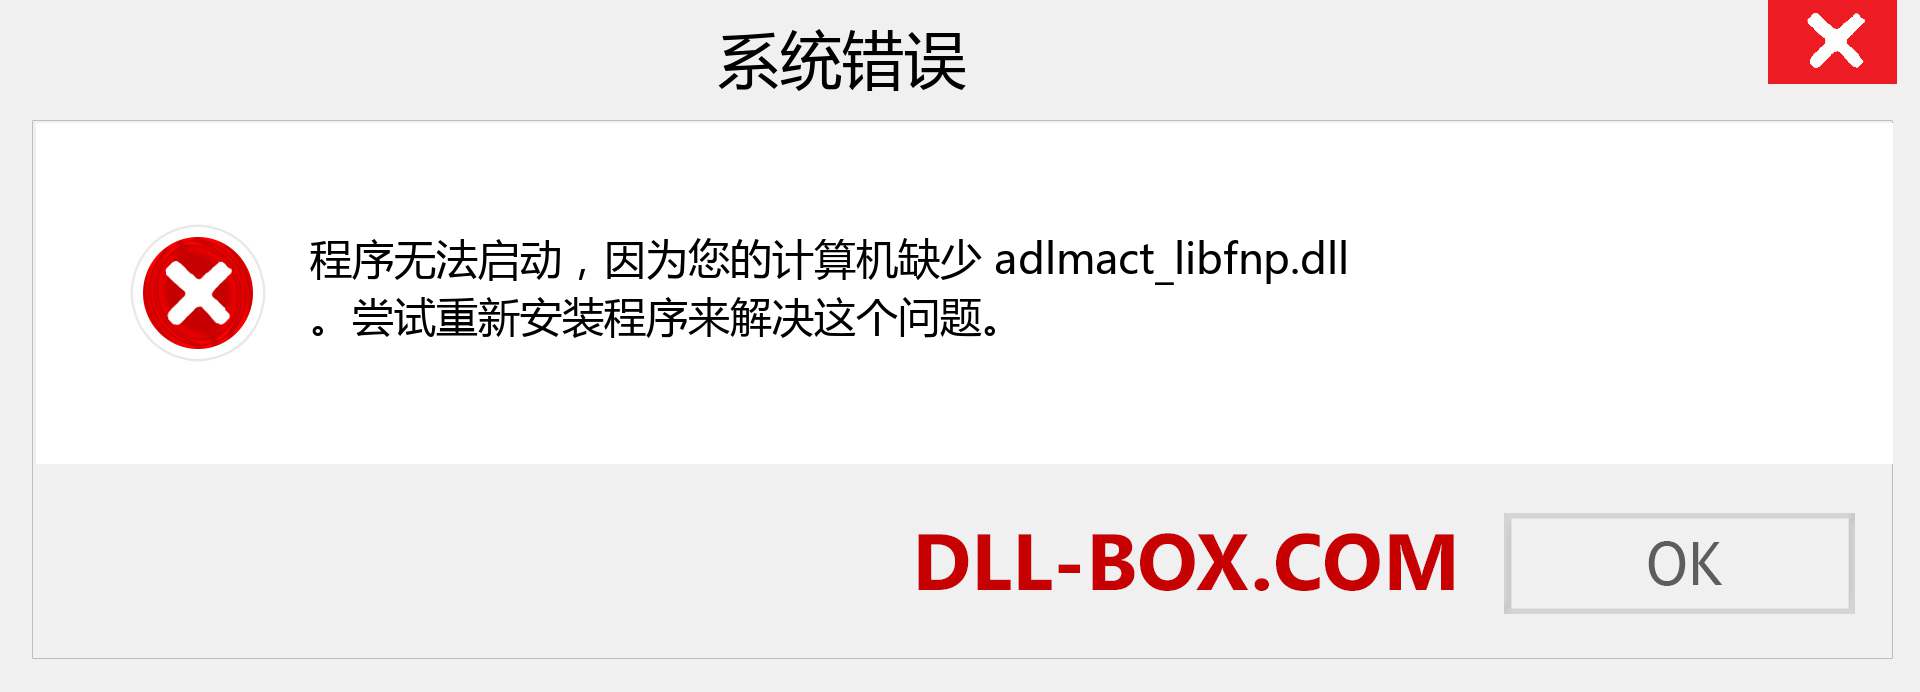 adlmact_libfnp.dll 文件丢失？。 适用于 Windows 7、8、10 的下载 - 修复 Windows、照片、图像上的 adlmact_libfnp dll 丢失错误